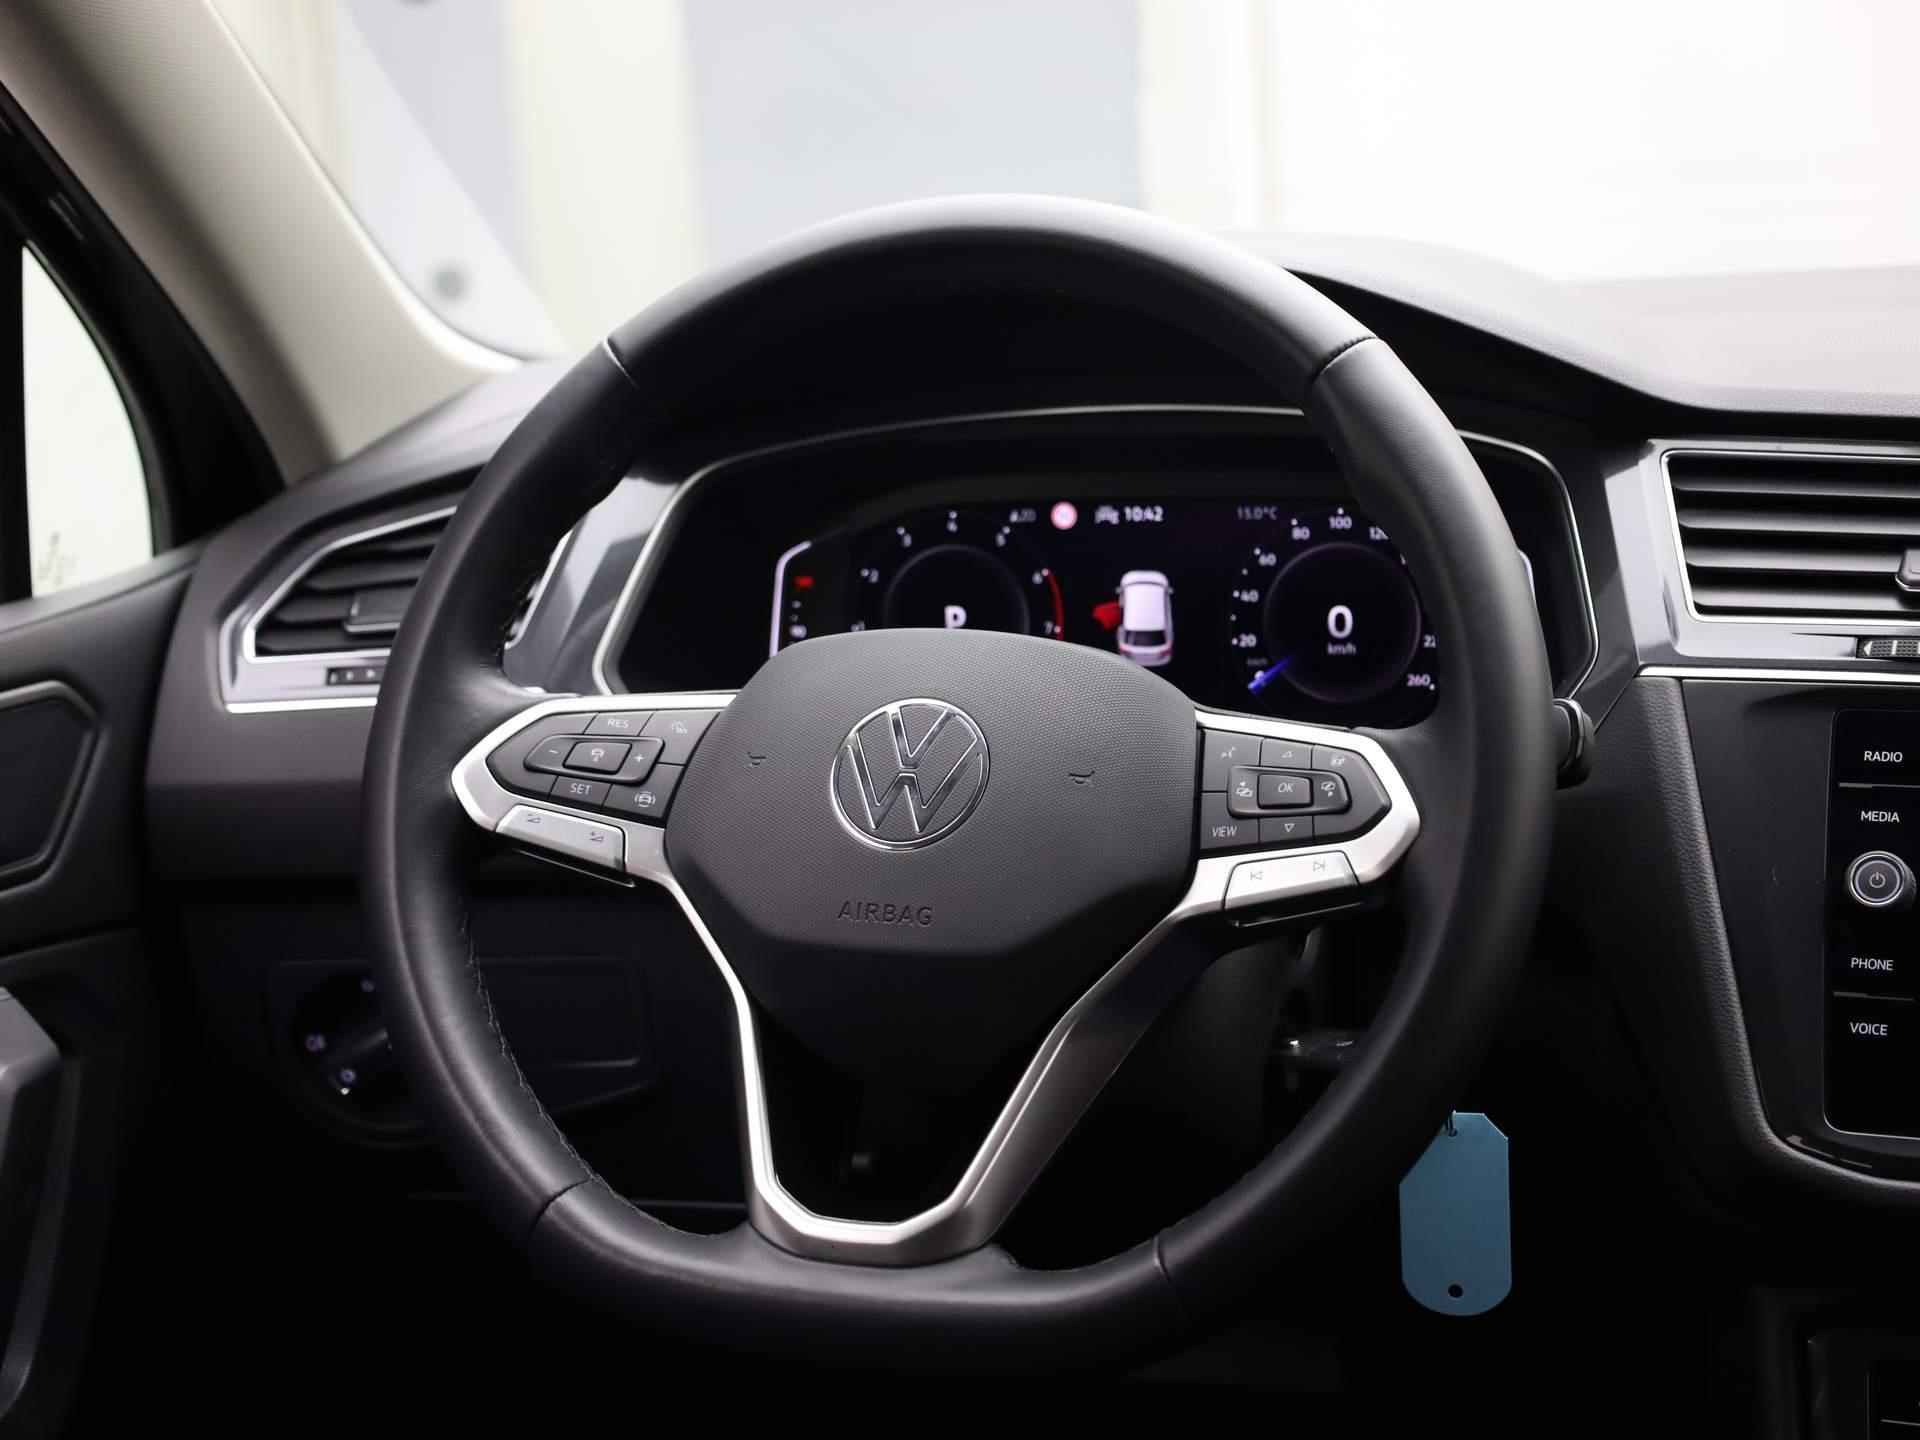 Volkswagen Tiguan Allspace 1.5TSI/150PK Life DSG 7p. · Navigatie · Trekhaak · Parkeersensoren - 30/36